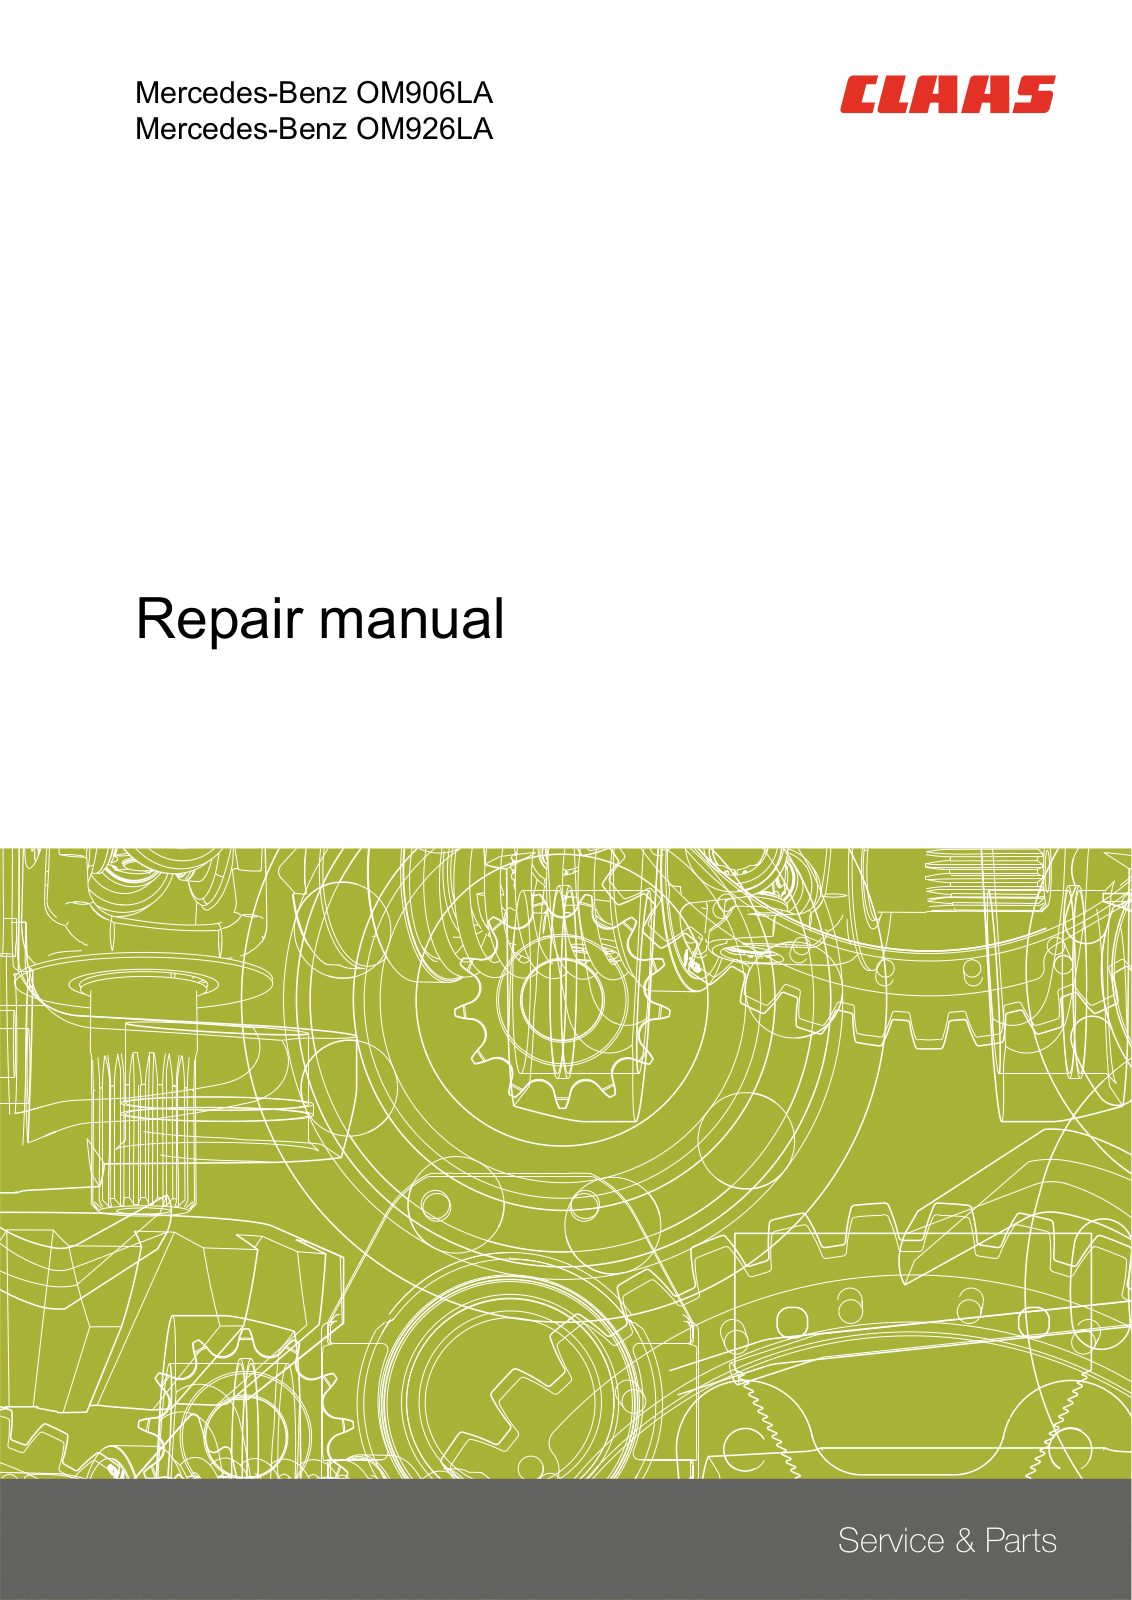 Mercedes-Benz OM906LA, OM926LA Repair Manual